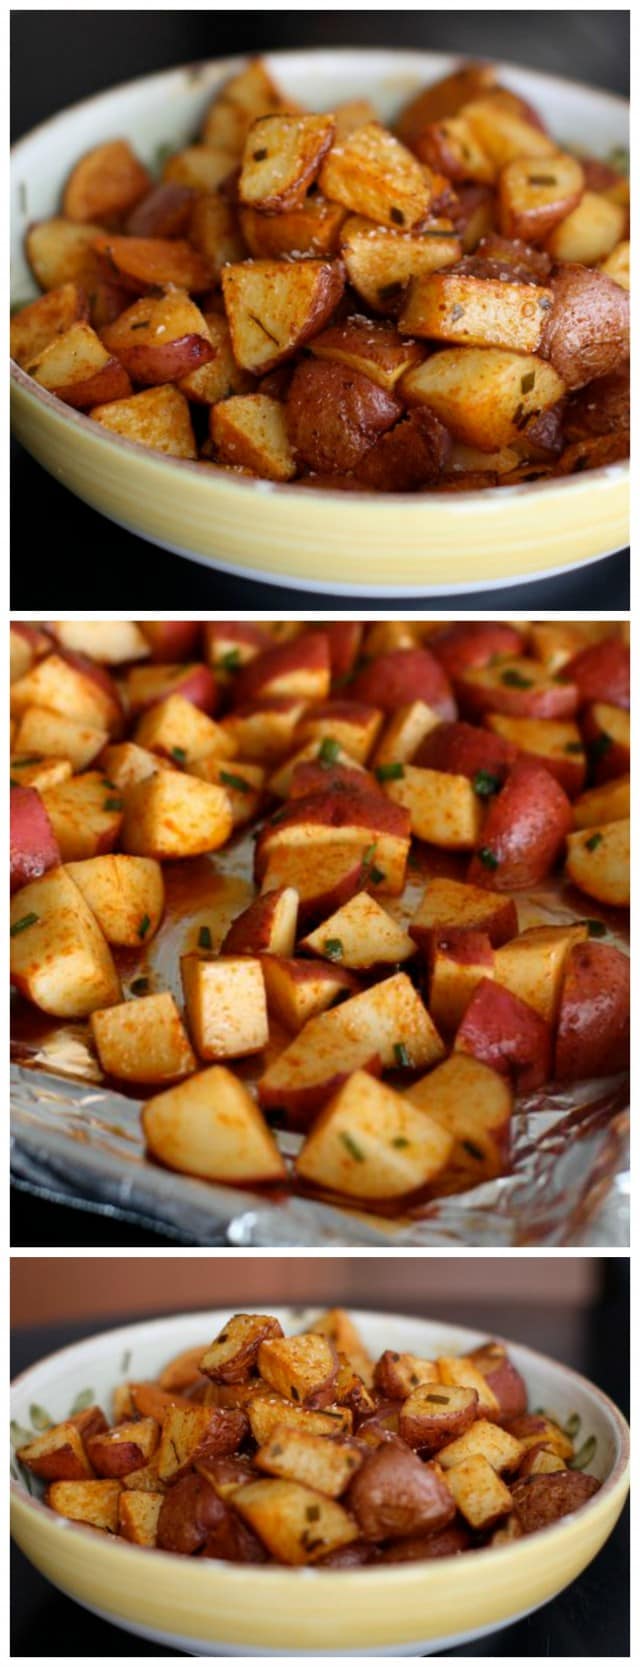 Las patatas rojas al horno con pimentón ahumado son un complemento sencillo y saludable para cualquier comida.